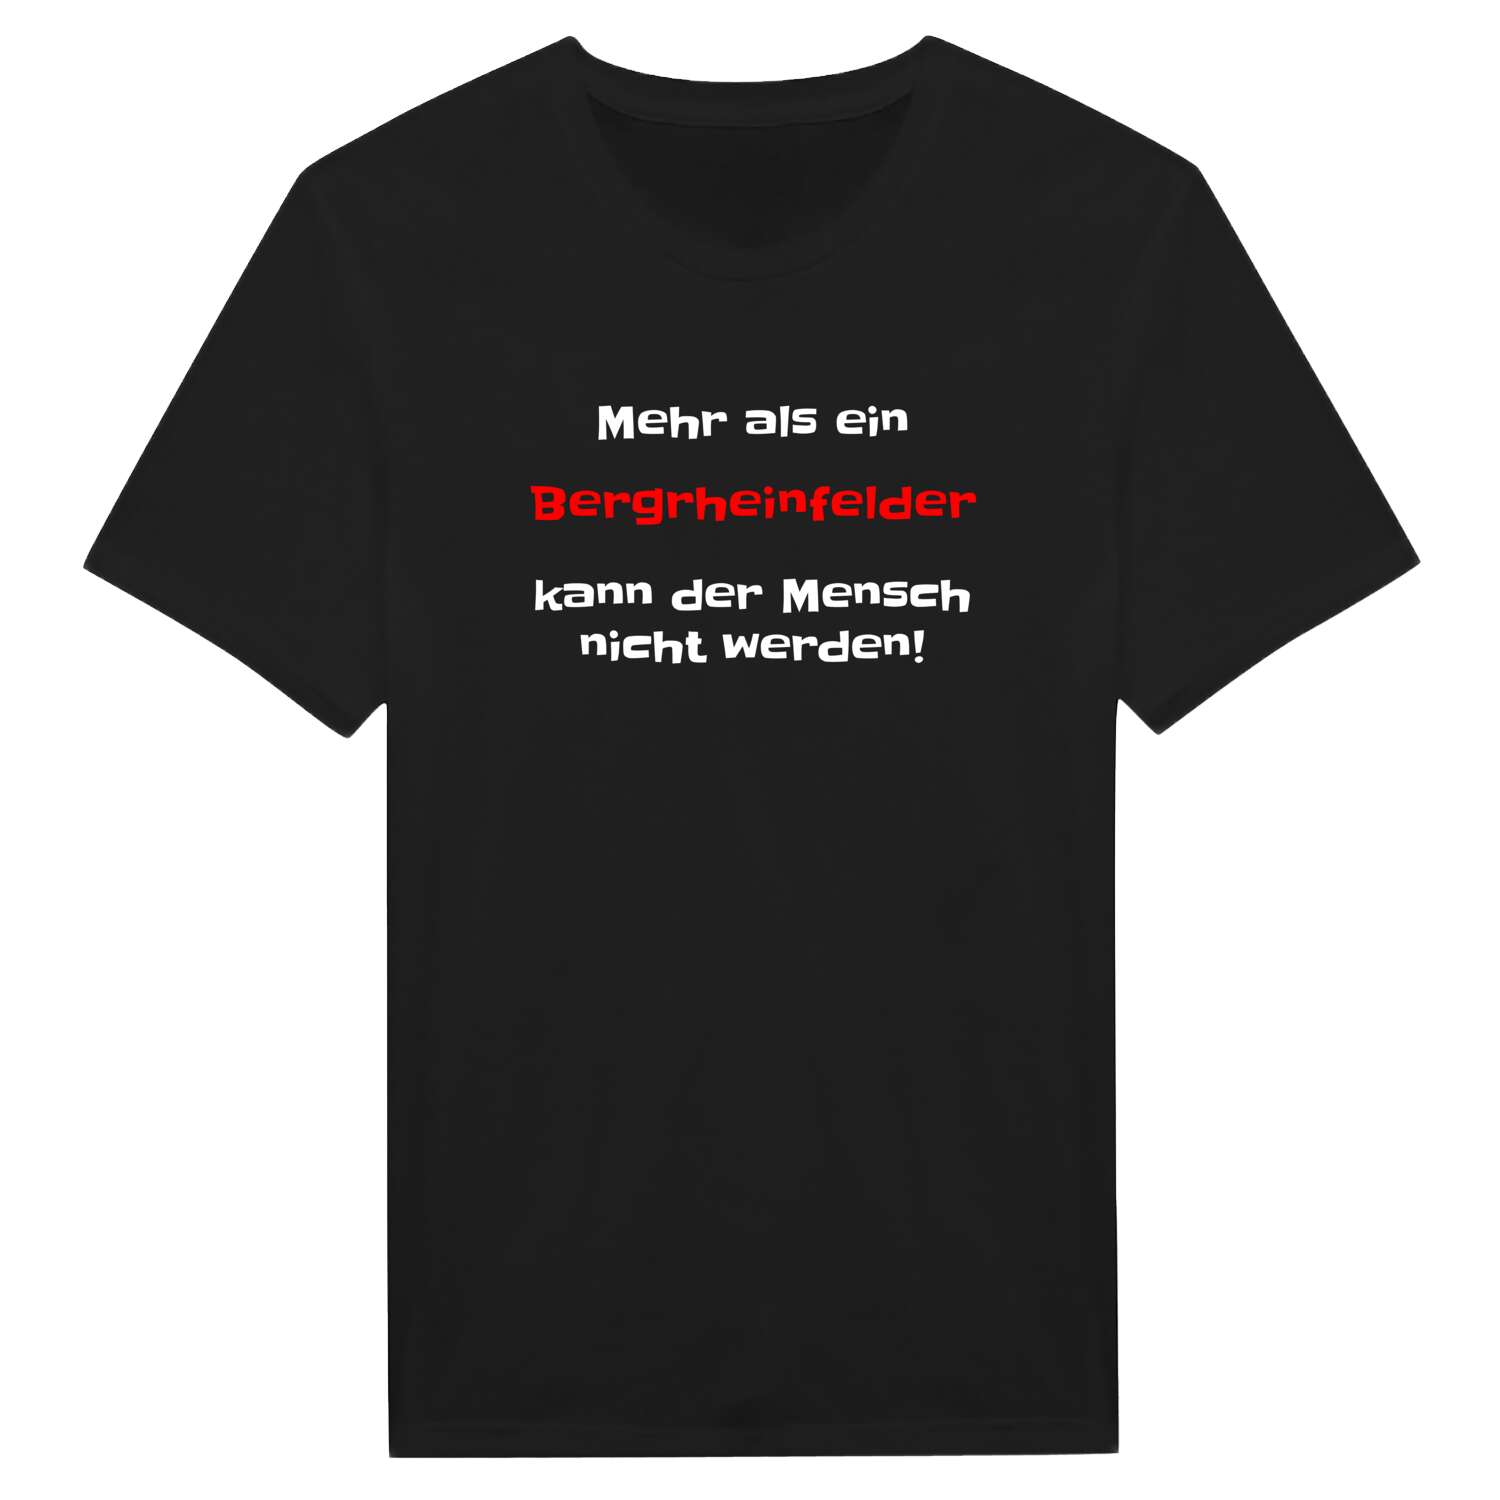 Bergrheinfeld T-Shirt »Mehr als ein«